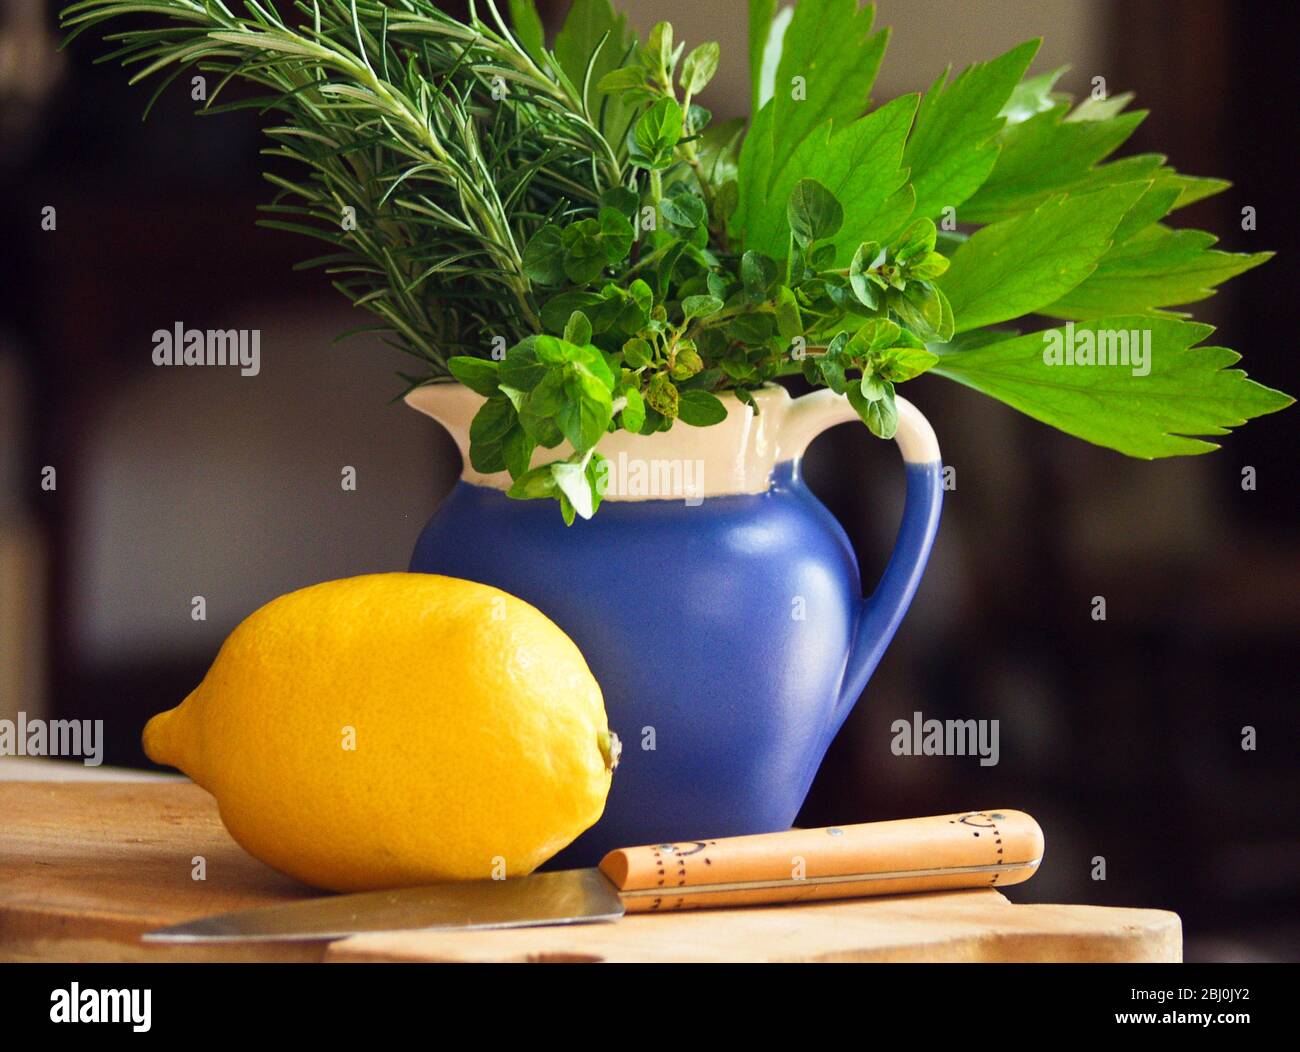 Citron sur planche à découper avec couteau et bouquet d'herbes de jardin mélangé dans un pichet bleu sur fond sombre - Banque D'Images